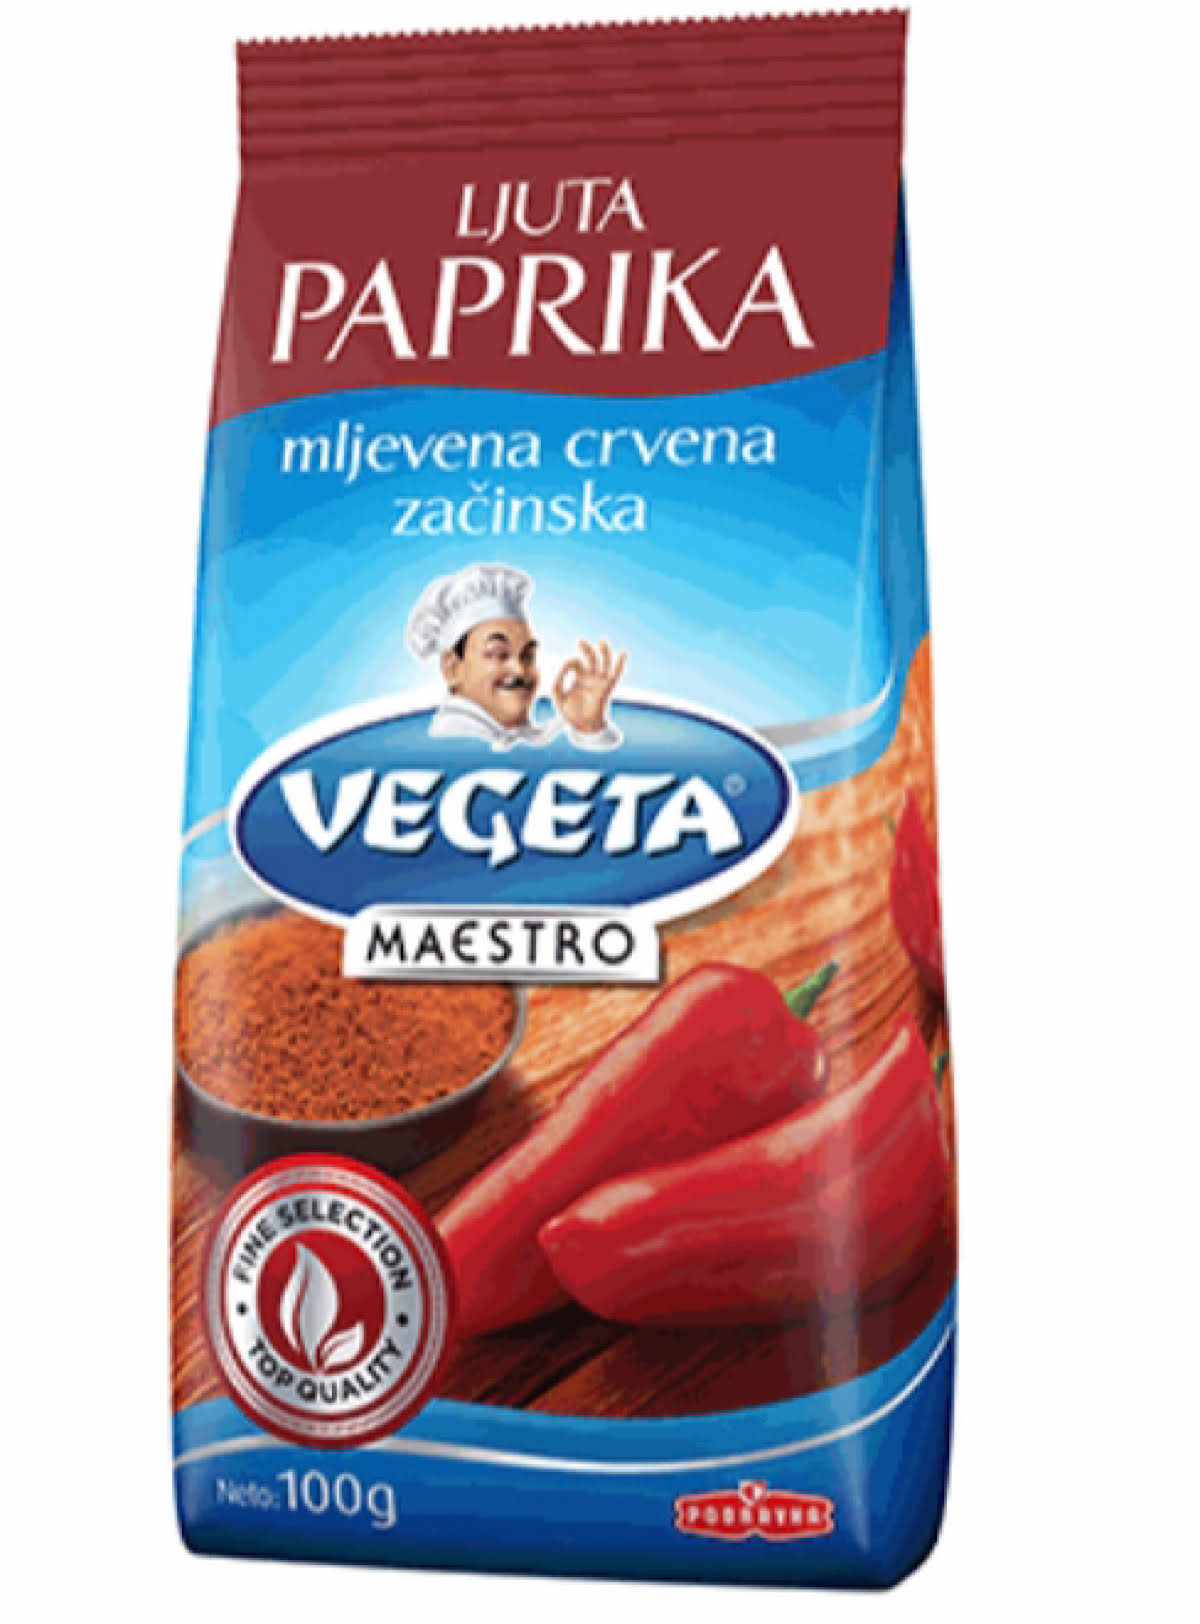 Hot Paprika - Podravka - 100 G